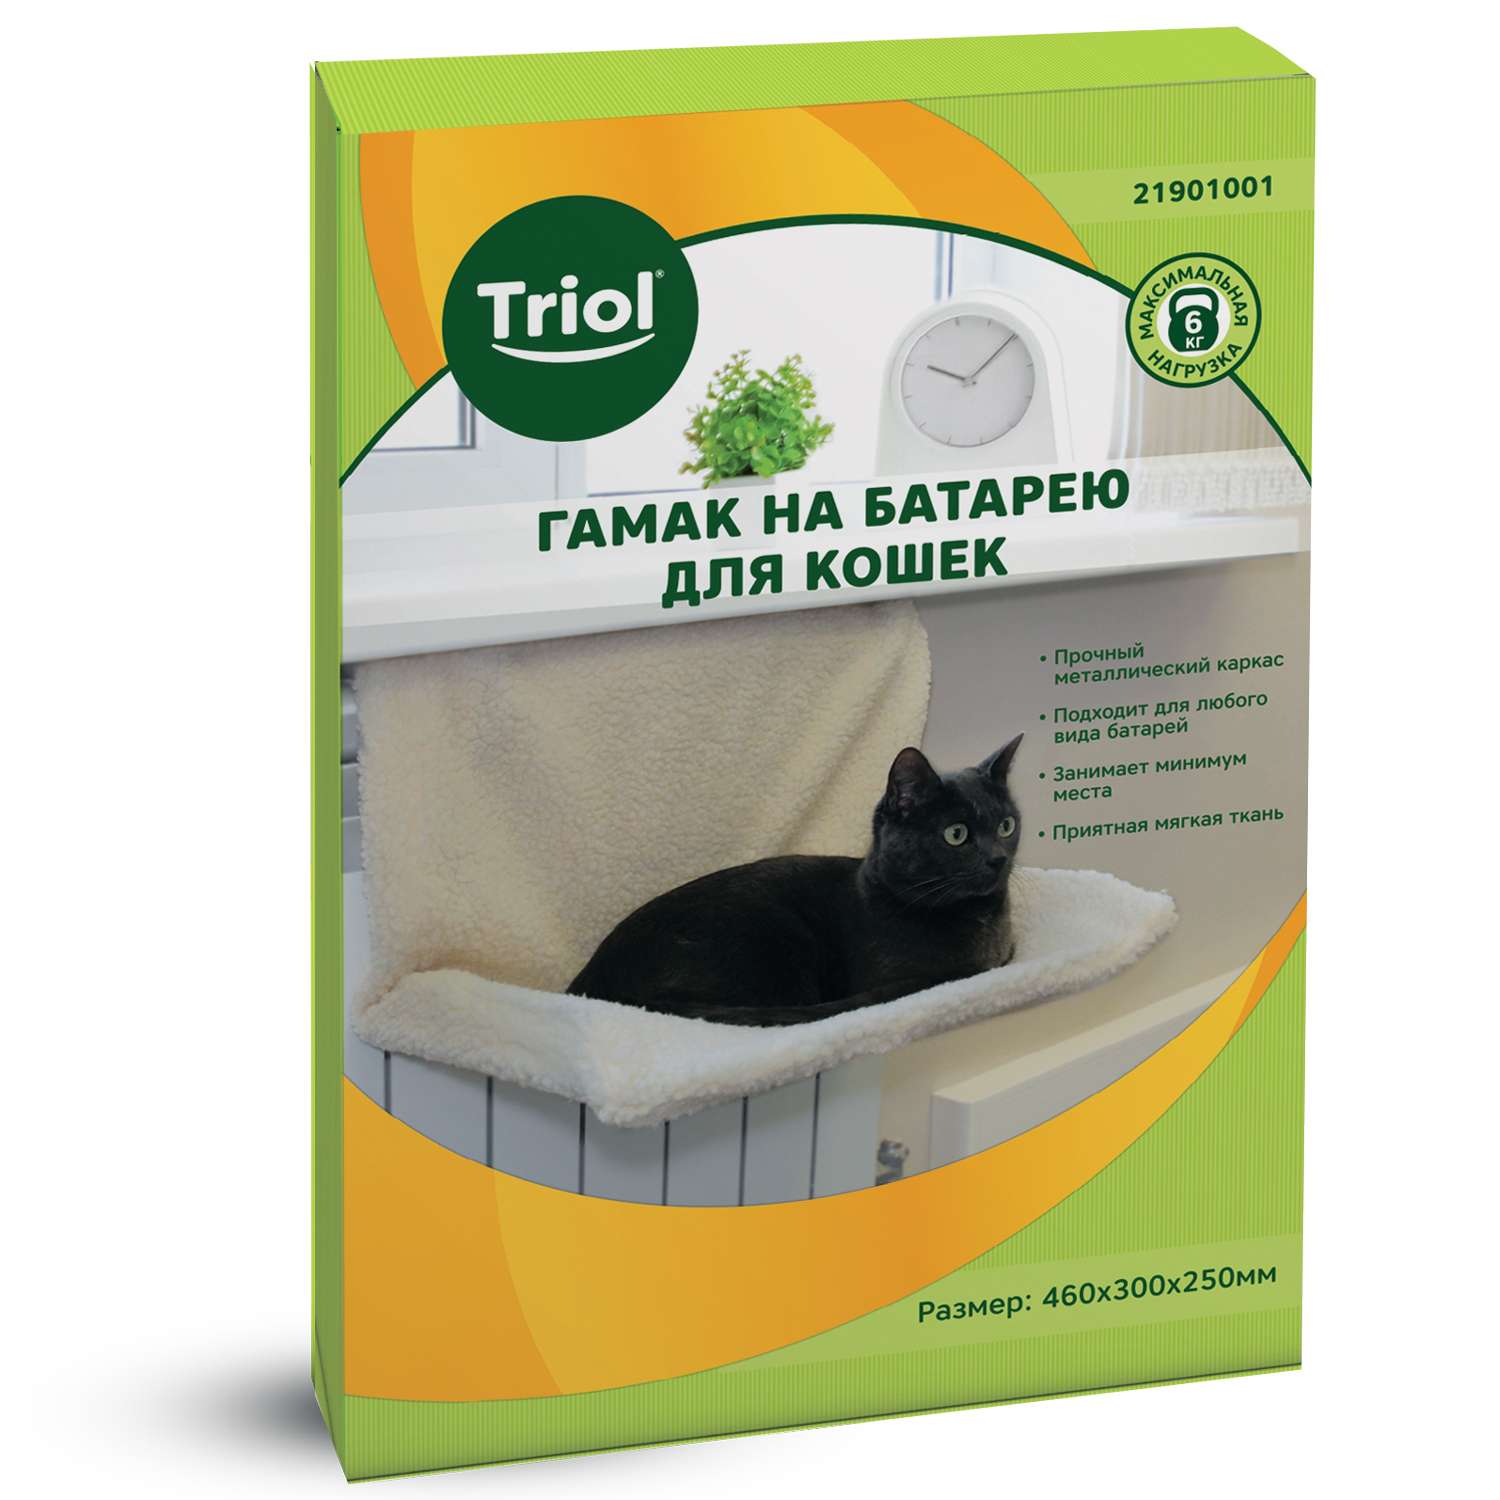 Гамак для кошек Triol на батарею 21901001 - фото 2